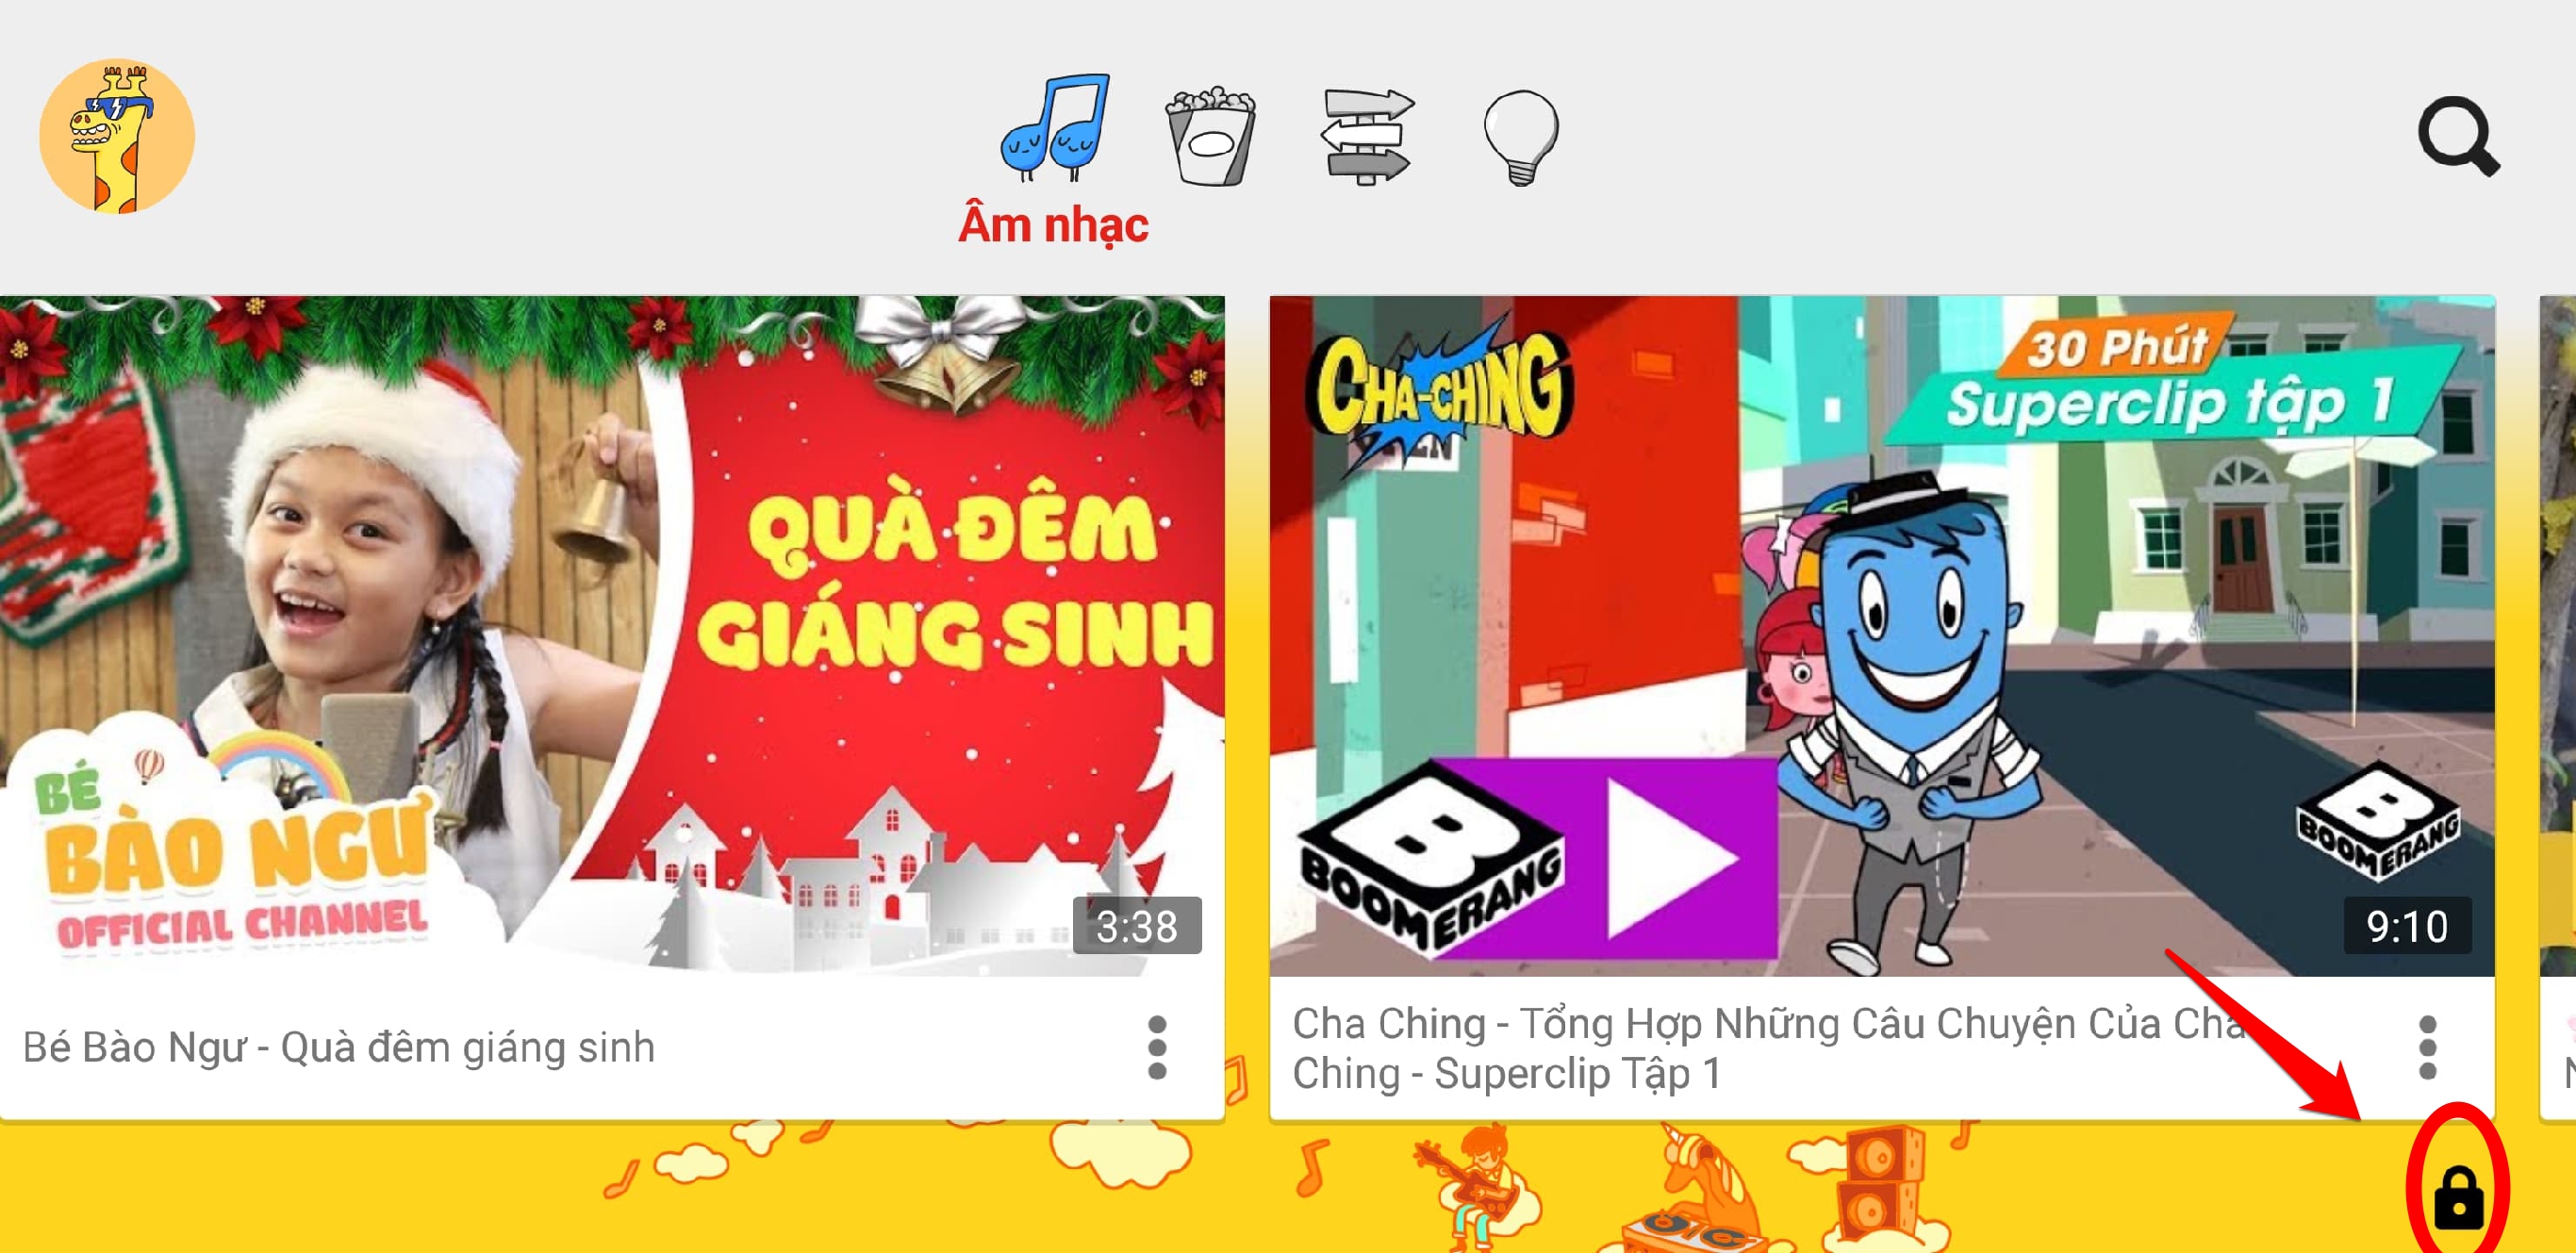 Google chính thức phát hành YouTube Kids tại Việt
Nam, đã có mặt trên cả Android và iOS